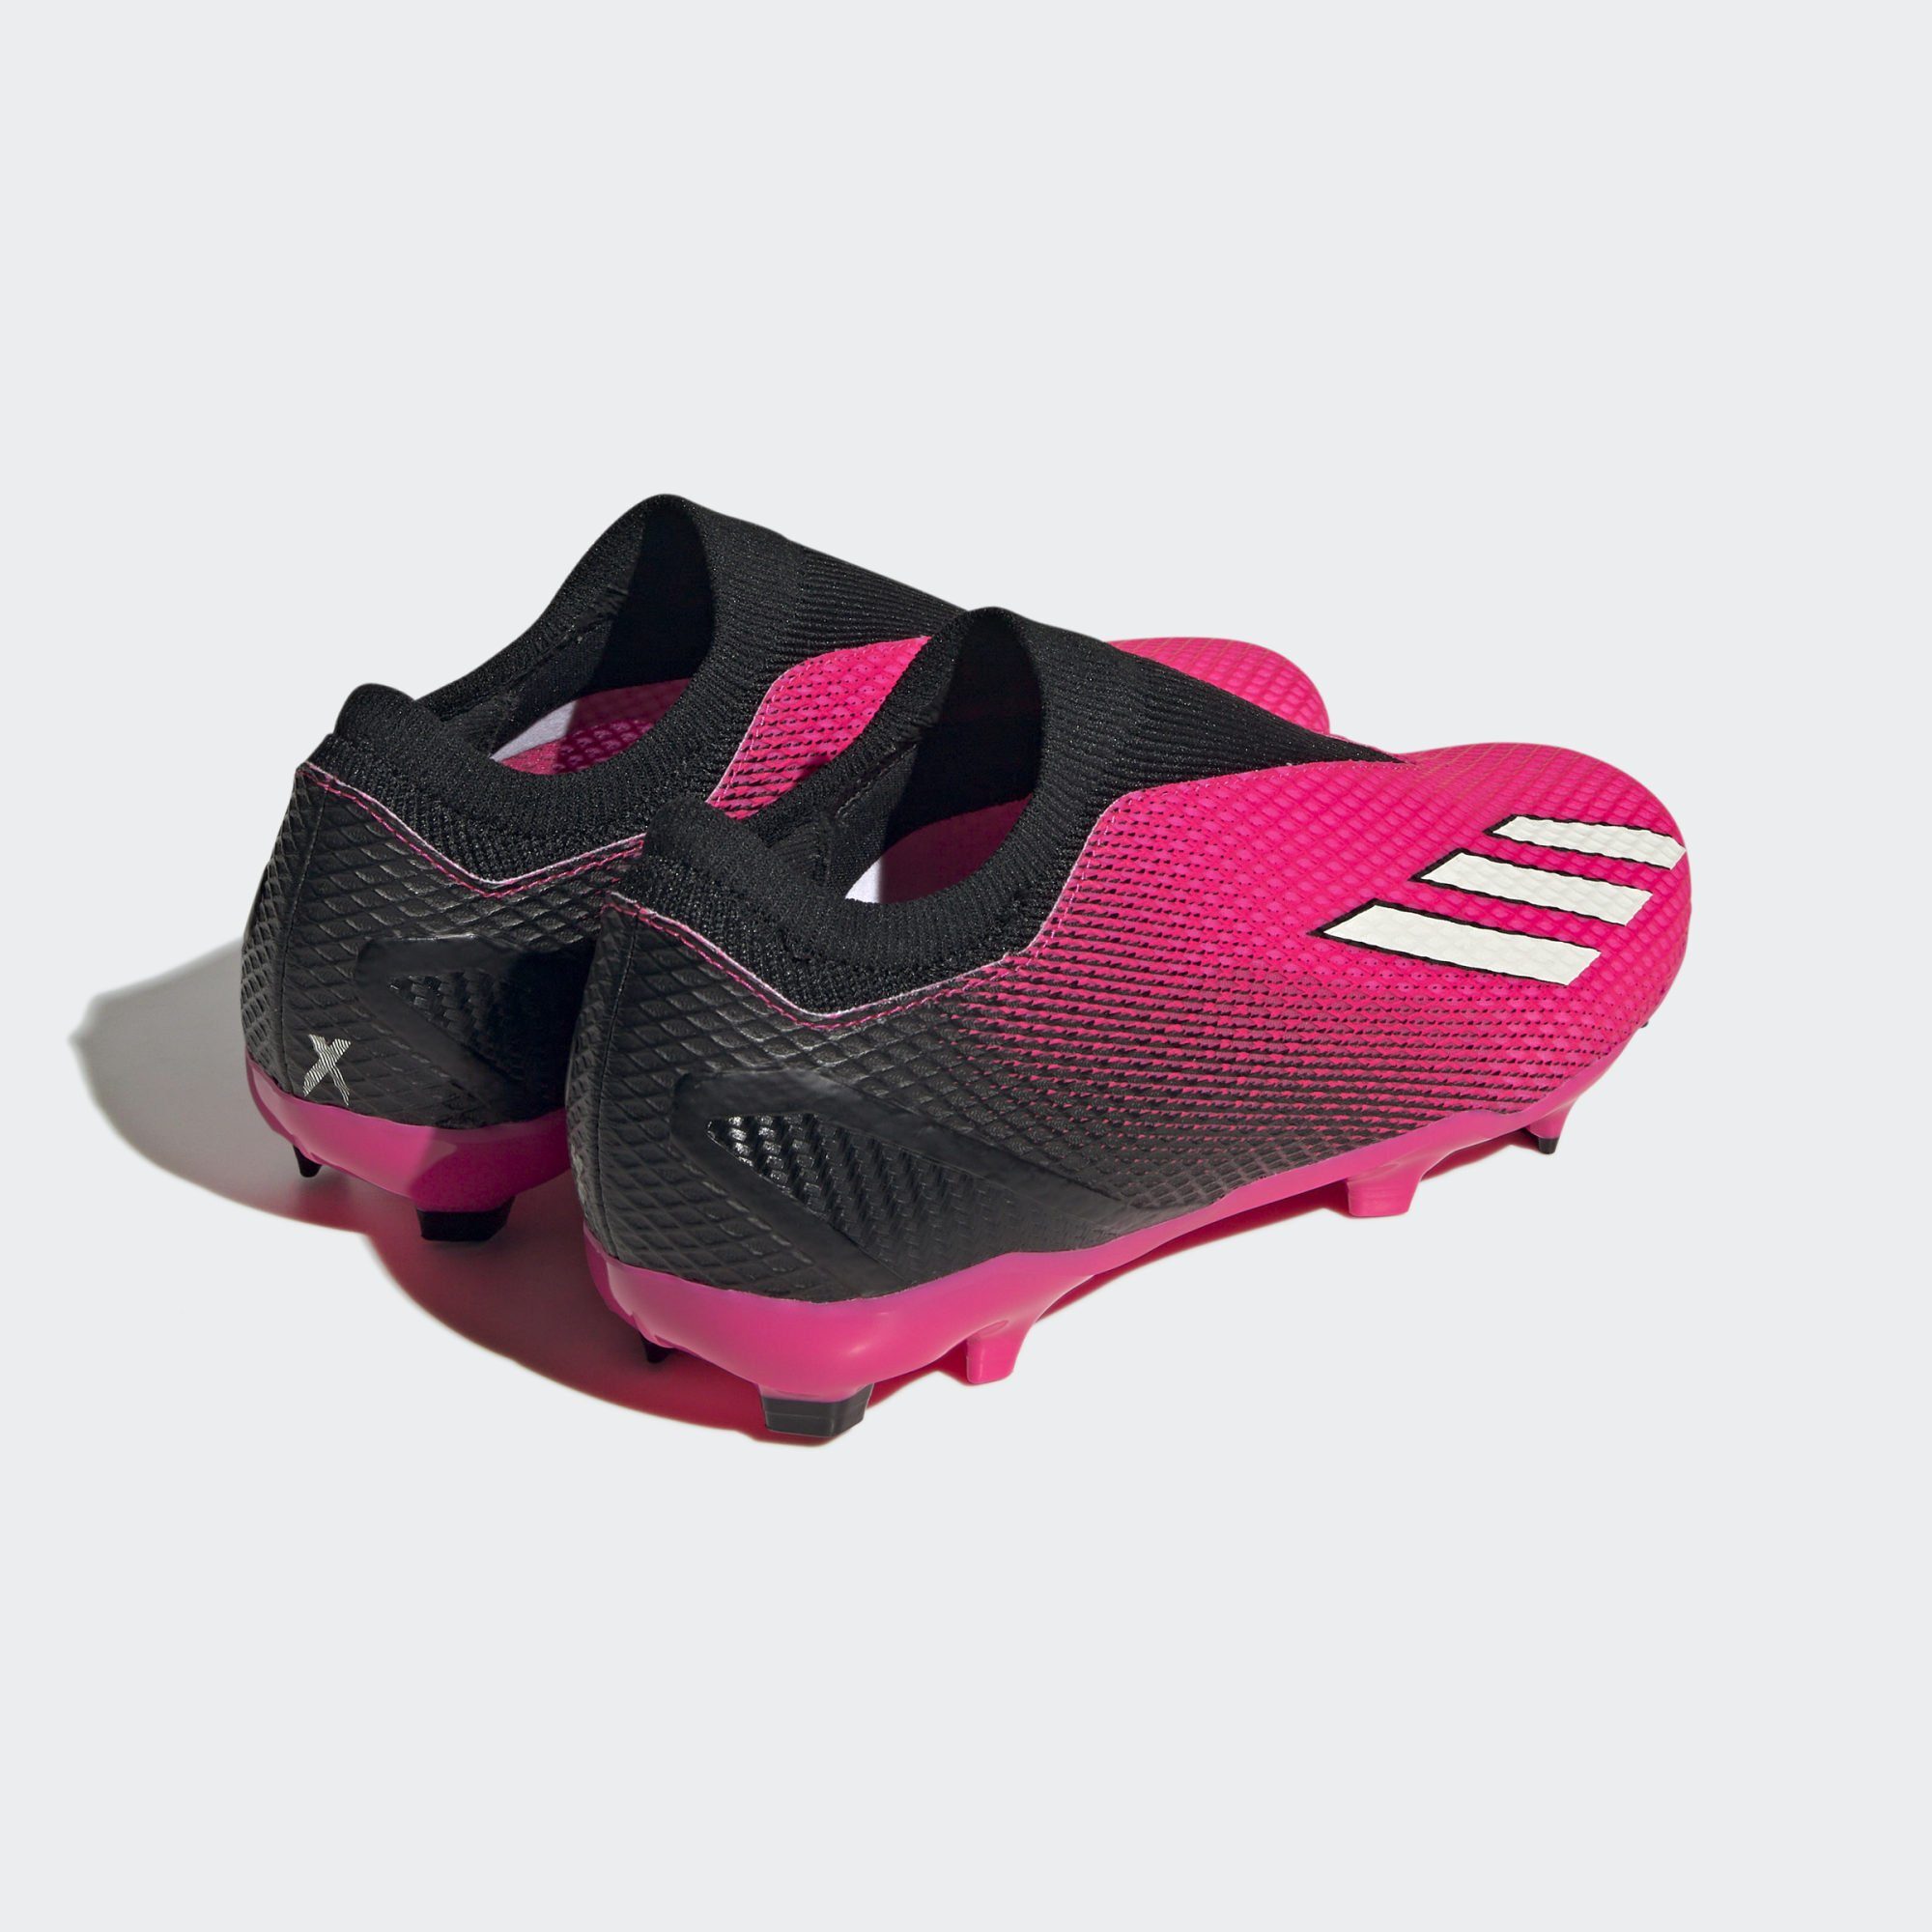 Fußballschuh adidas Performance FG SPEEDPORTAL.3 pinkschwarzweiss FUSSBALLSCHUH LACELESS X